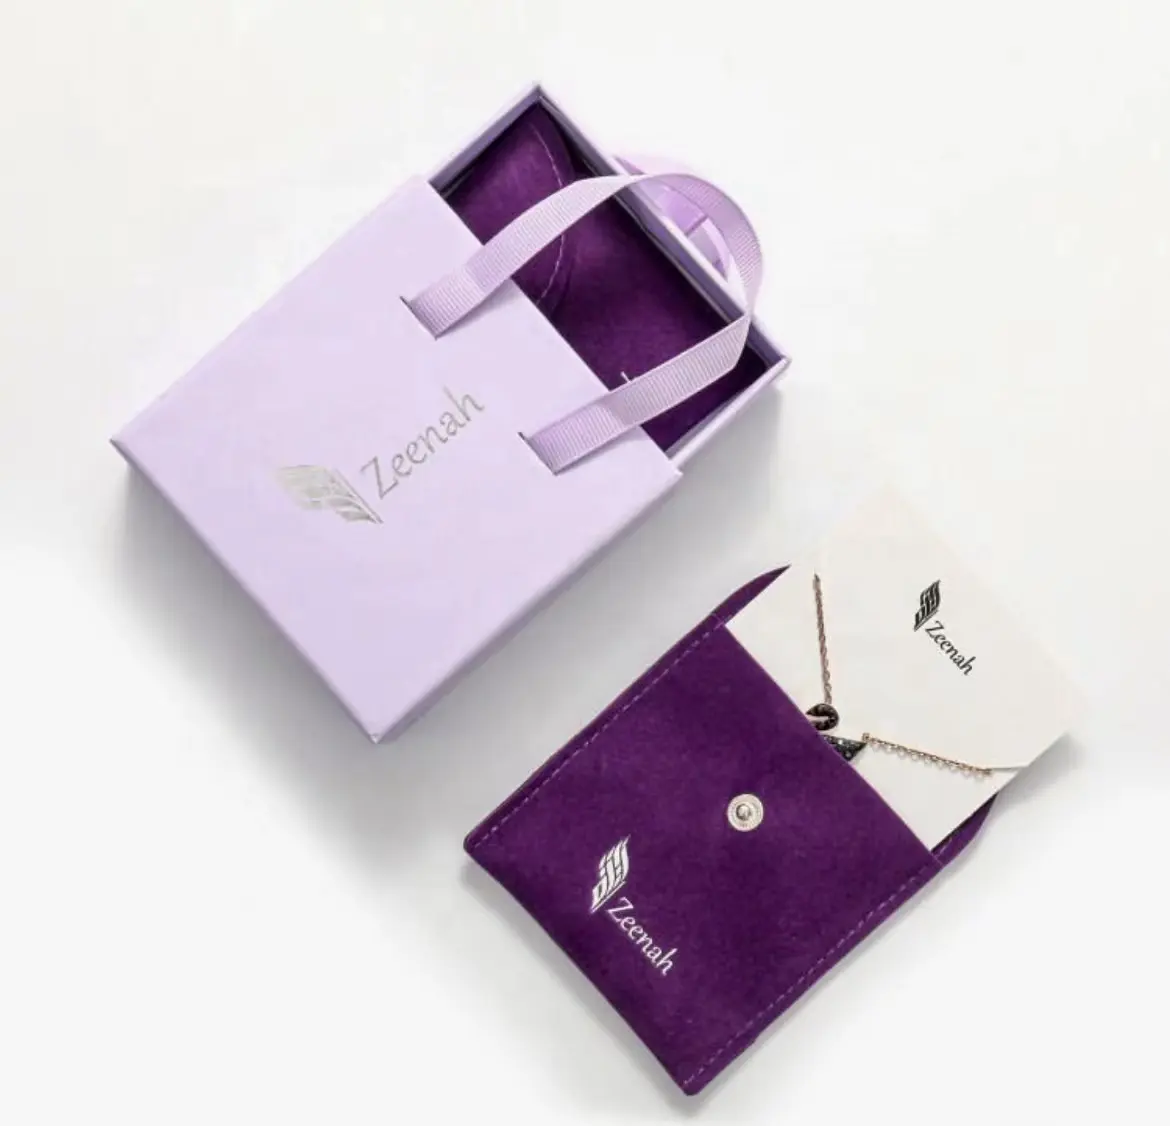 Ustom-caja de joyería con asa, paquete de joyería con bolsa de joyería impresa con Logo propio